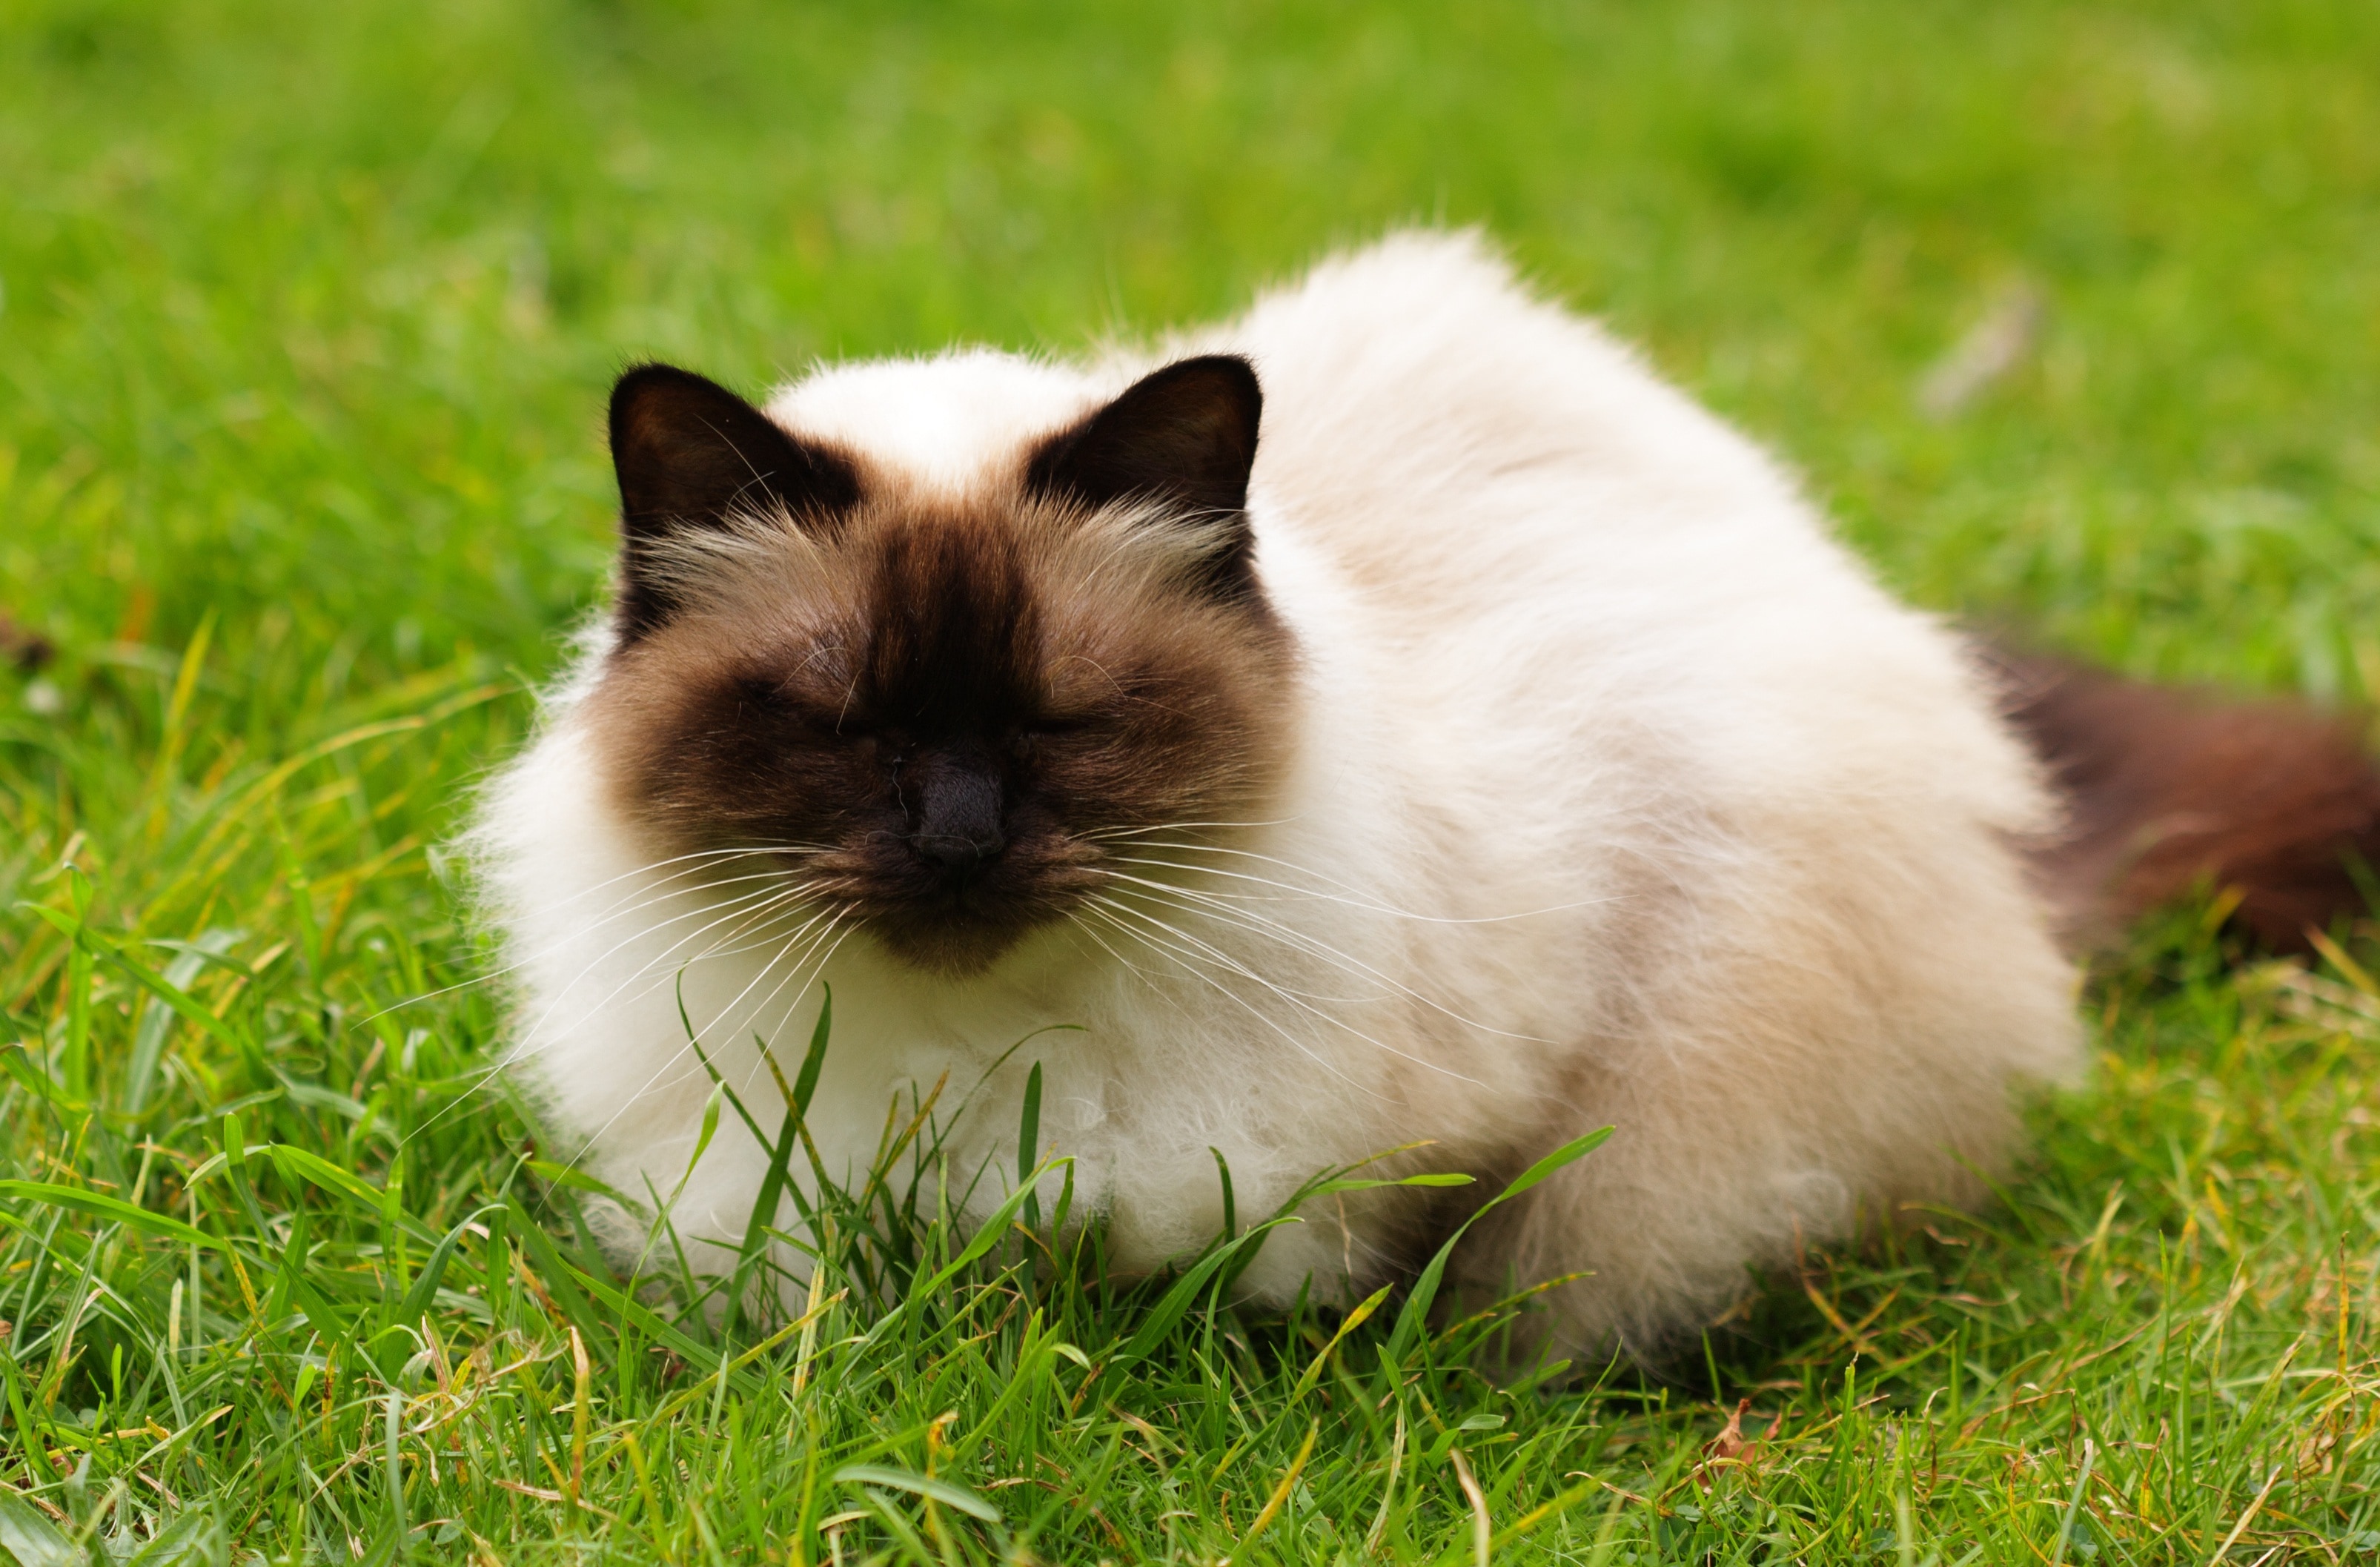 Cat, Persian, Himalayan, Himalayan Cat, domestic cat, grass